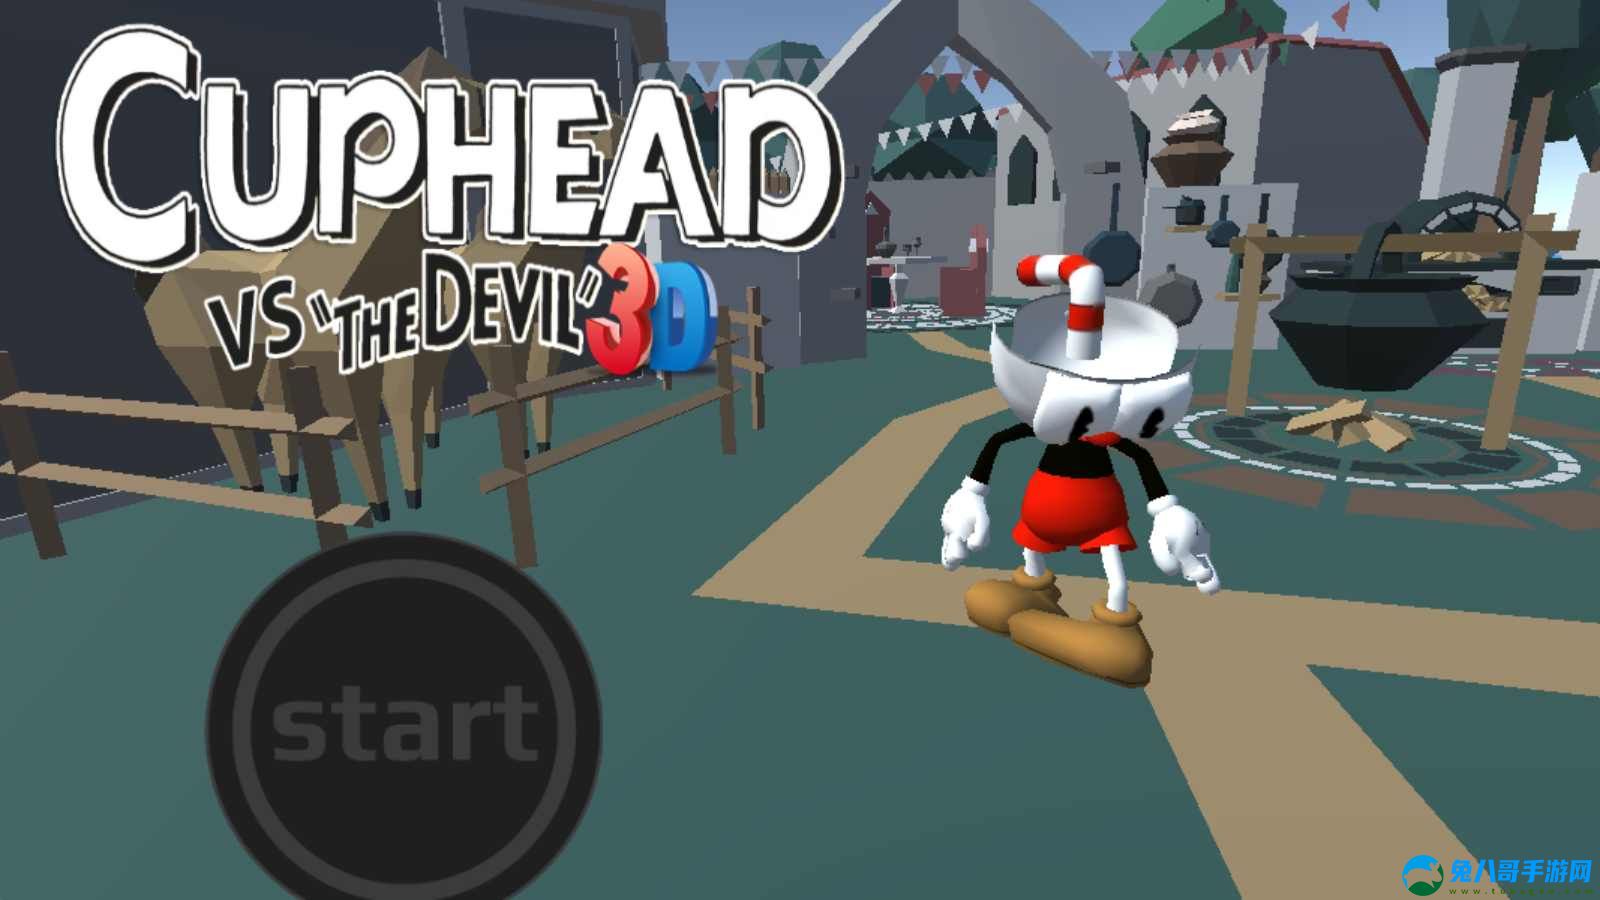 茶杯头3d版下载安装手机版（Cuphead vs the devil 3D）